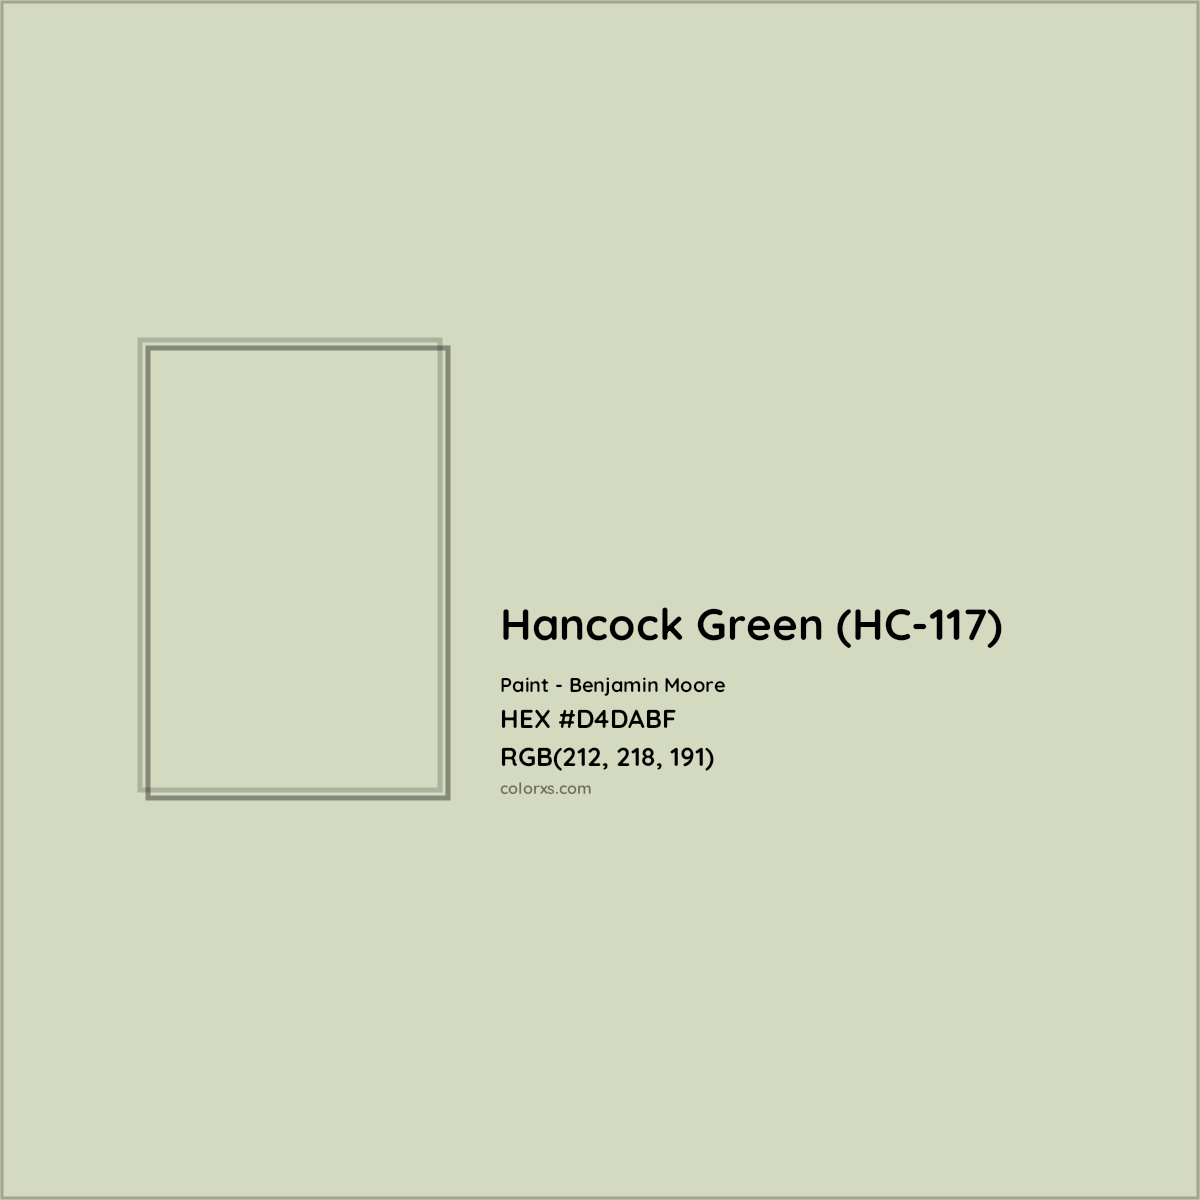 HEX #D4DABF Hancock Green (HC-117) Paint Benjamin Moore - Color Code